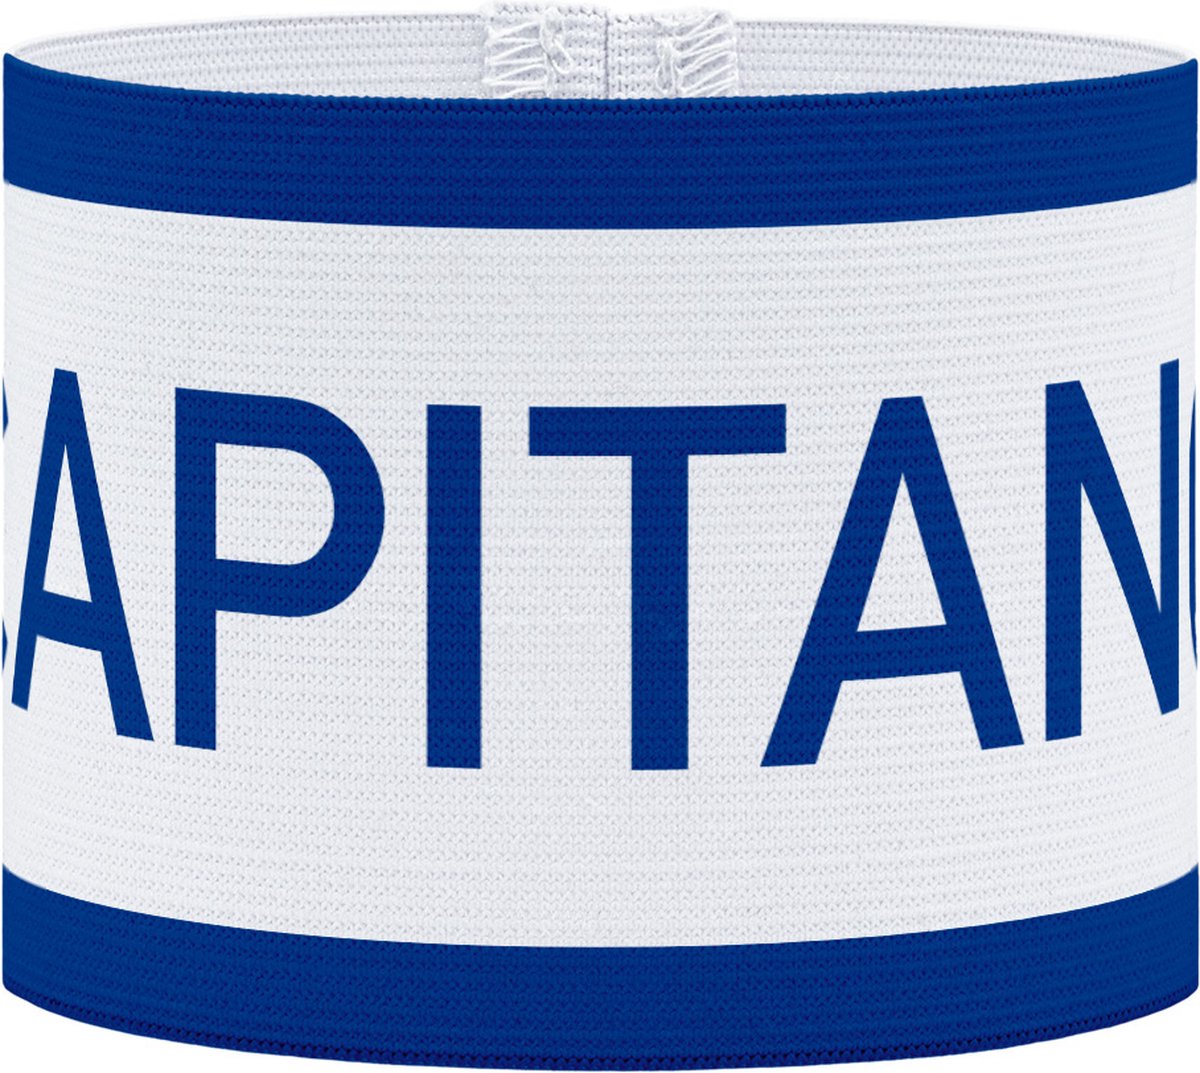 Aanvoerdersband - Captain - Wit / Blauw - S